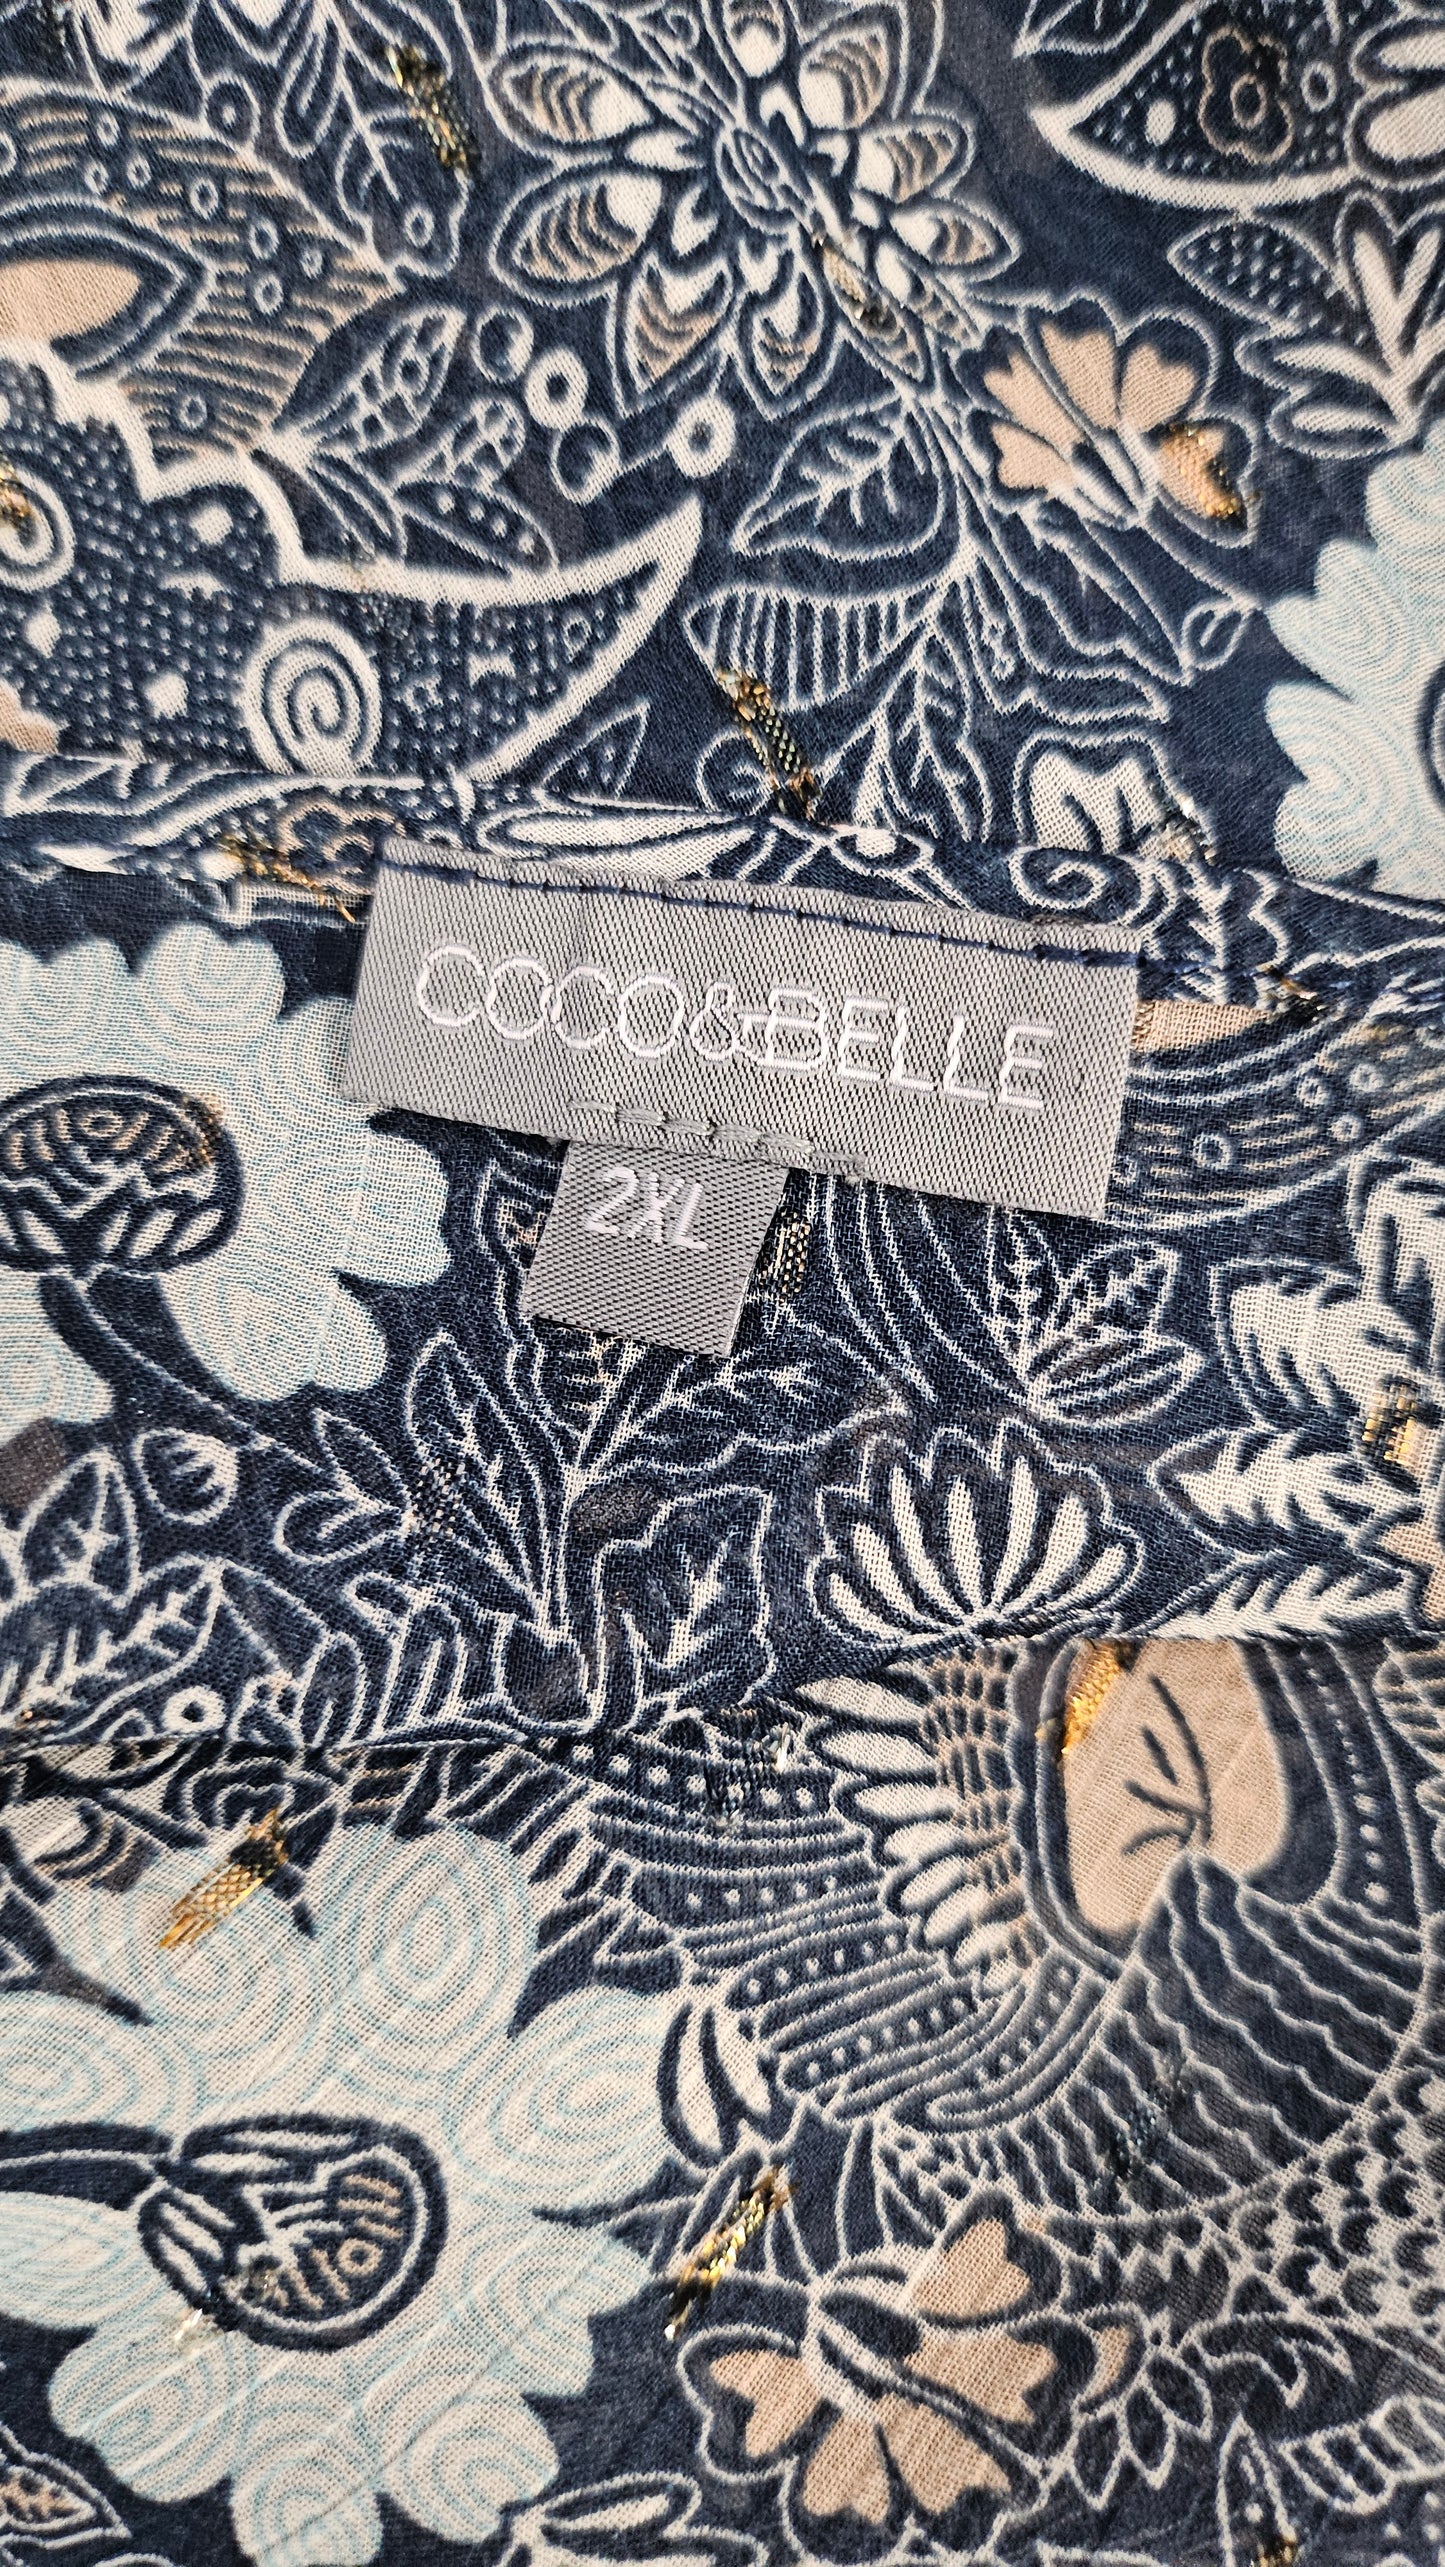 Coco & Belle Multi Sheer Pleated Sleeve Top (20)